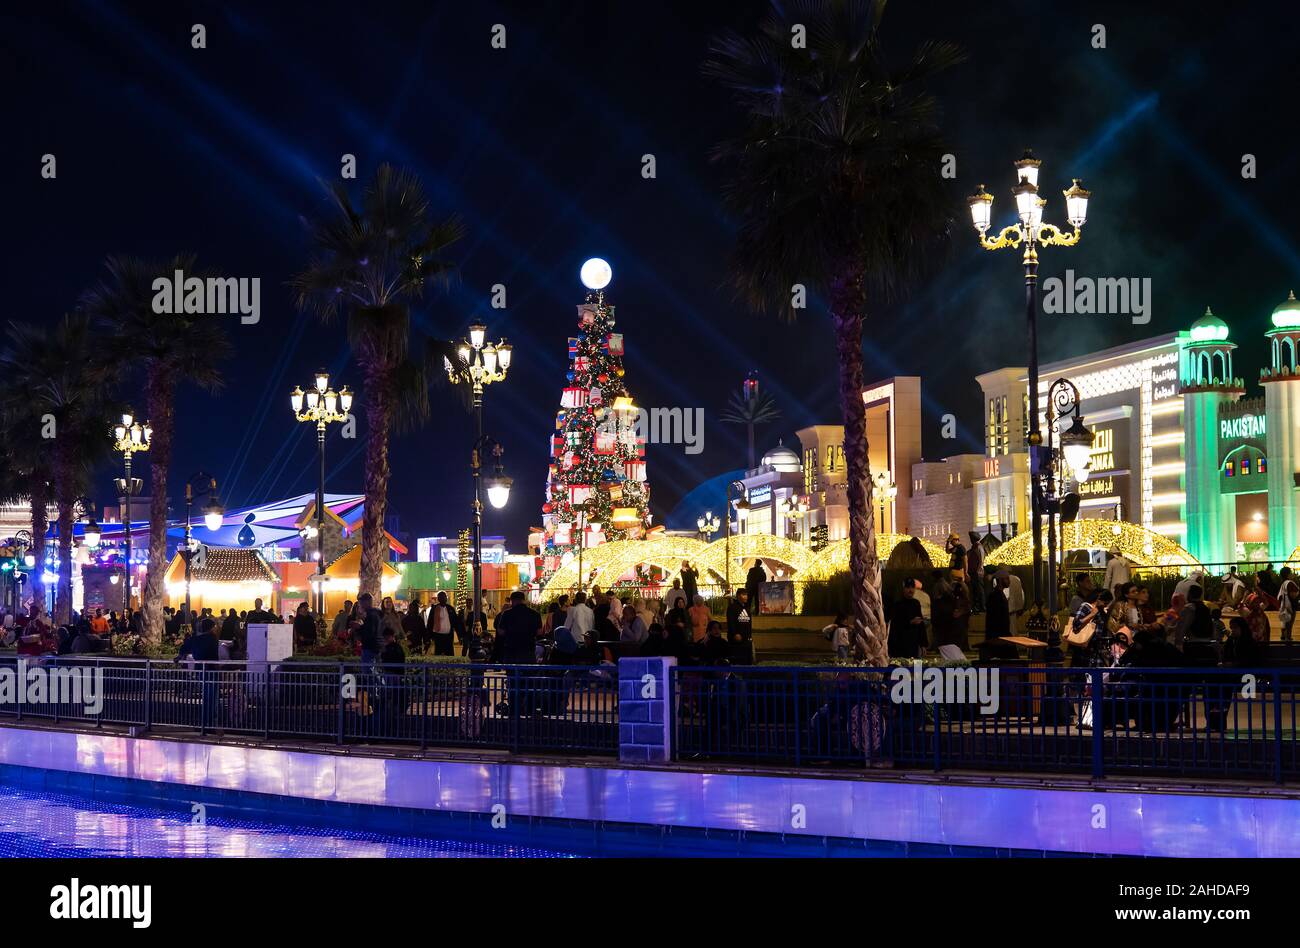 Dubai, Vereinigte Arabische Emirate - Dezember 26, 2018: Global Village mit großen Weihnachtsbaum und Winterurlaub Dekorationen in Dubai, VAE. Eine der am meisten Stockfoto